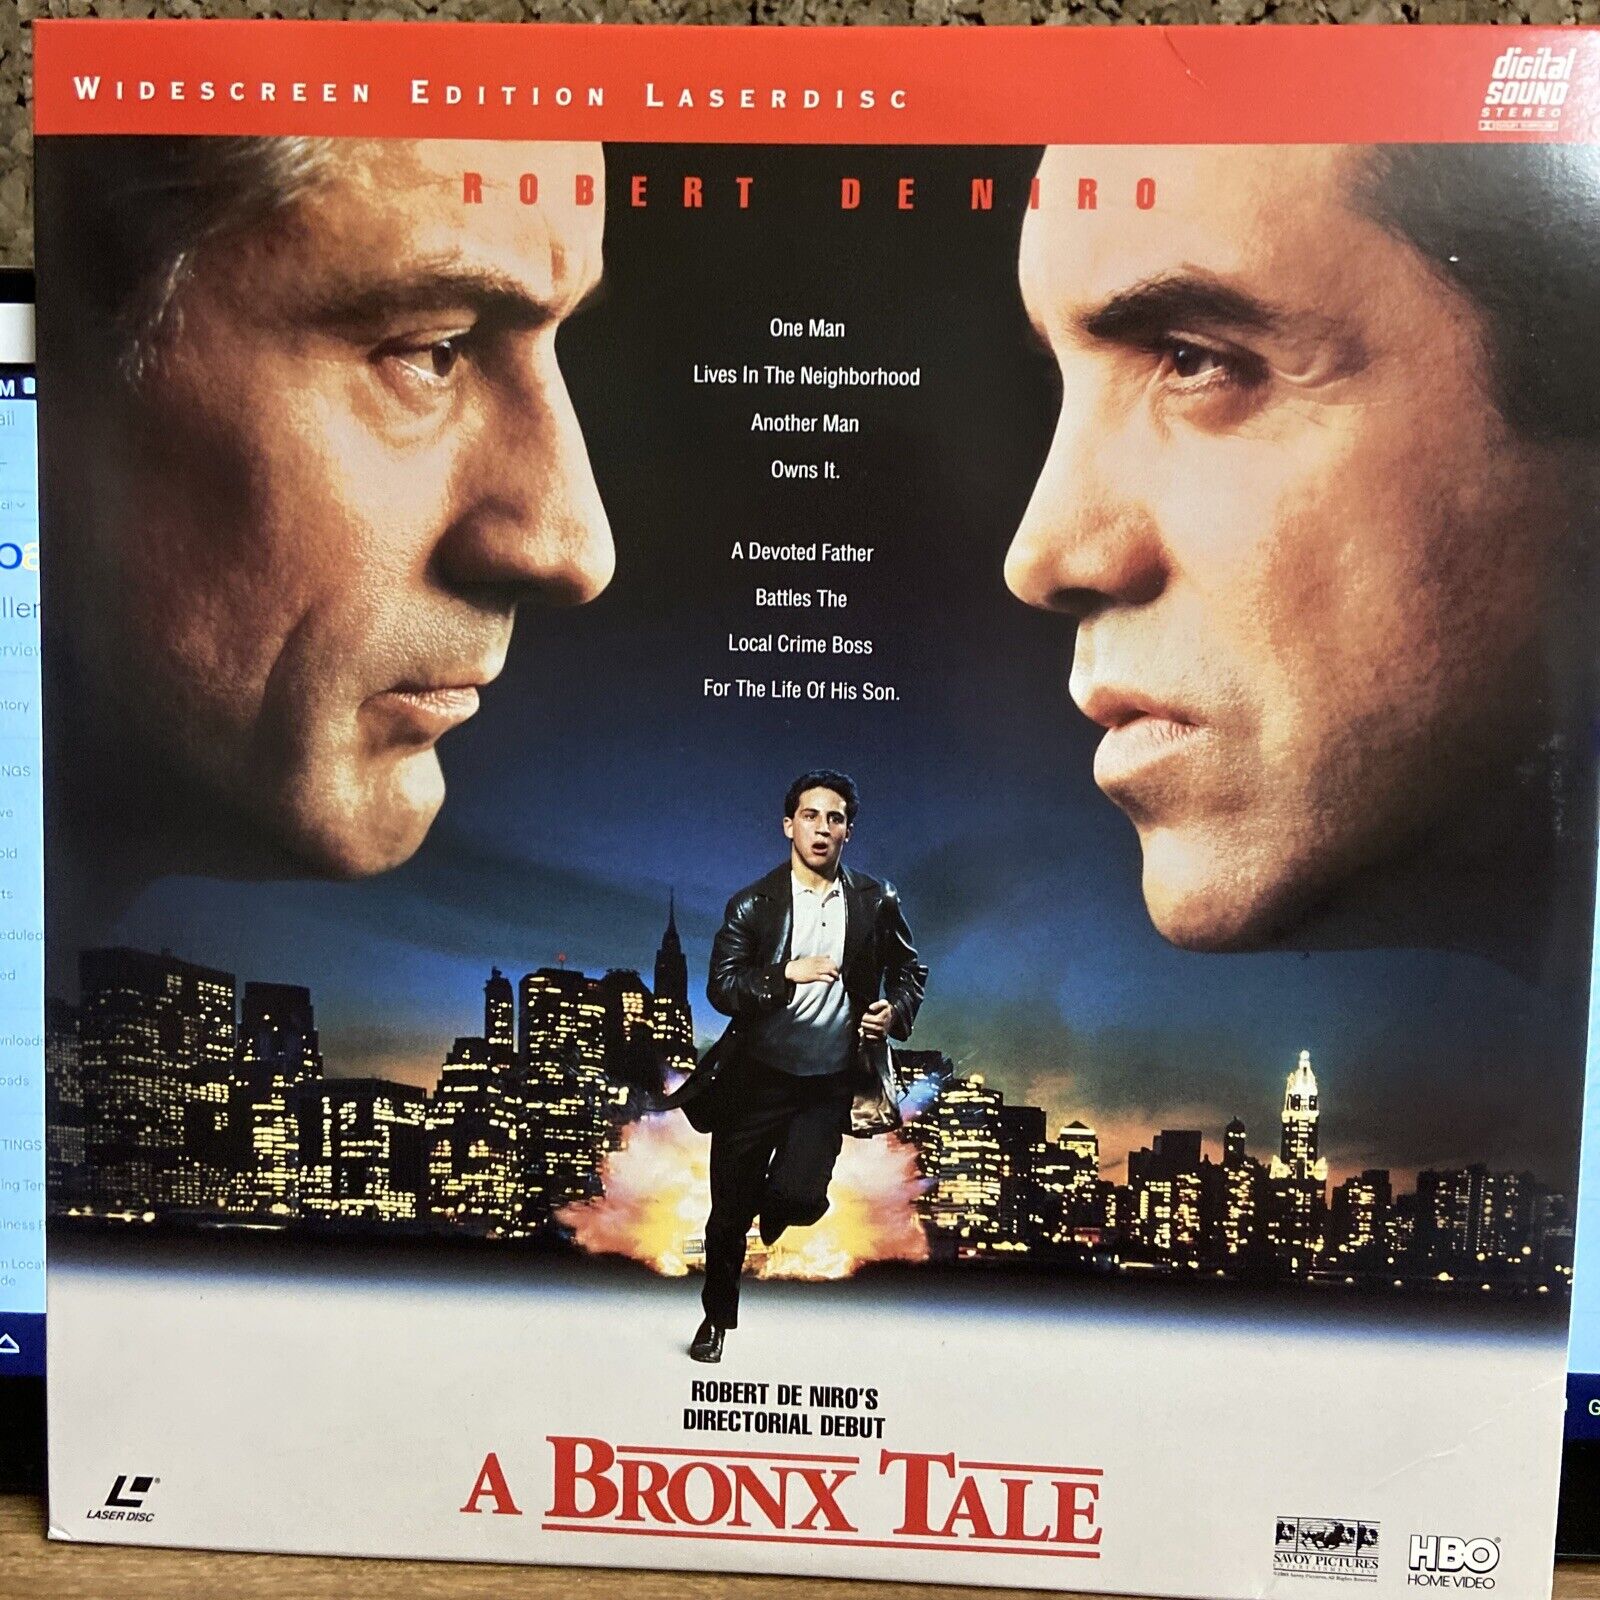 A Tale Laserdisc (Not a DVD) - Good - Widescreen - 2 Disc Near-Mint | eBay